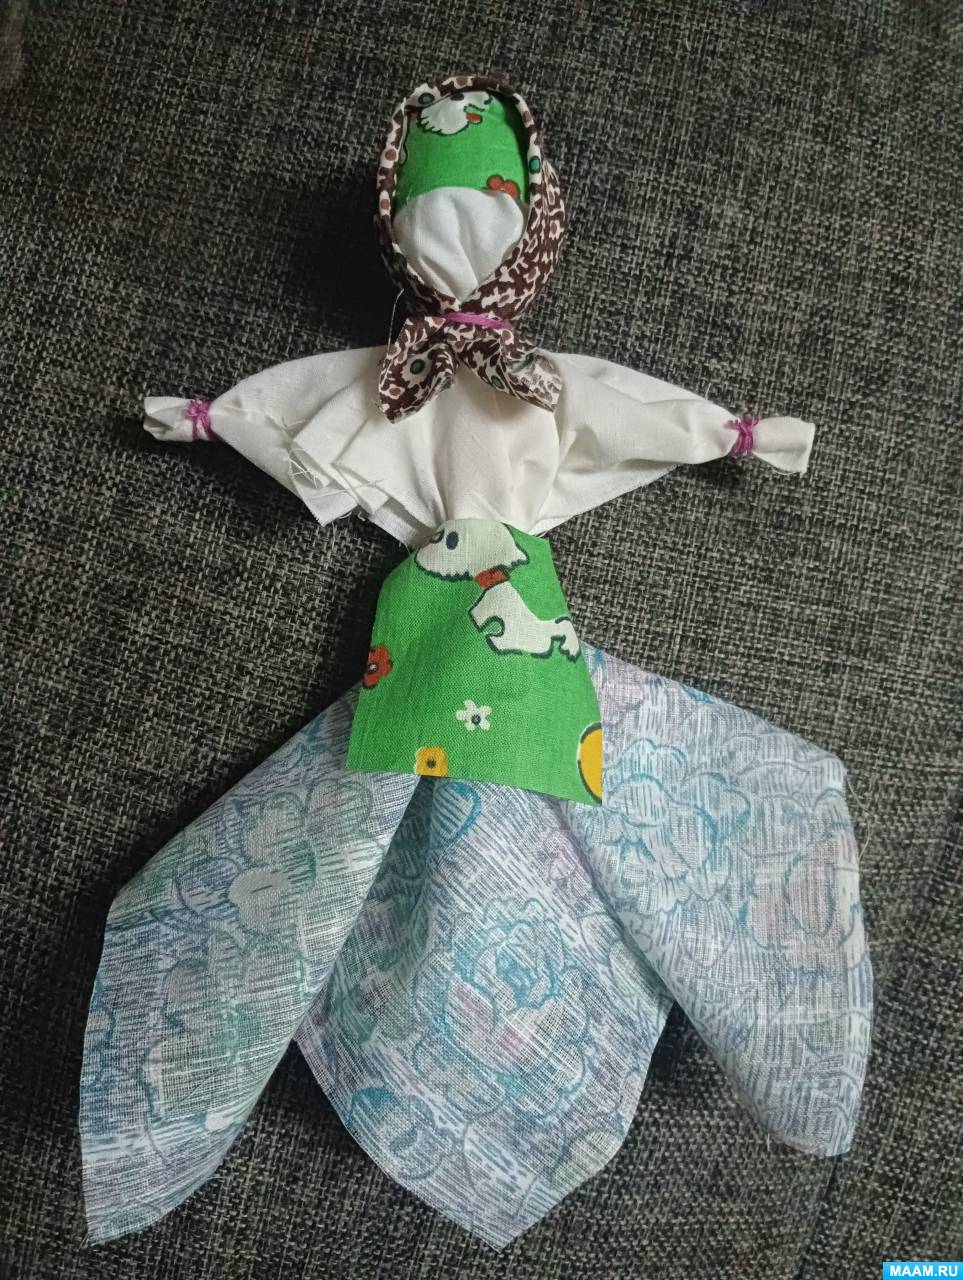 Мастер-класс по изготовлению куклы-оберега из лоскутков для детей от 7 лет